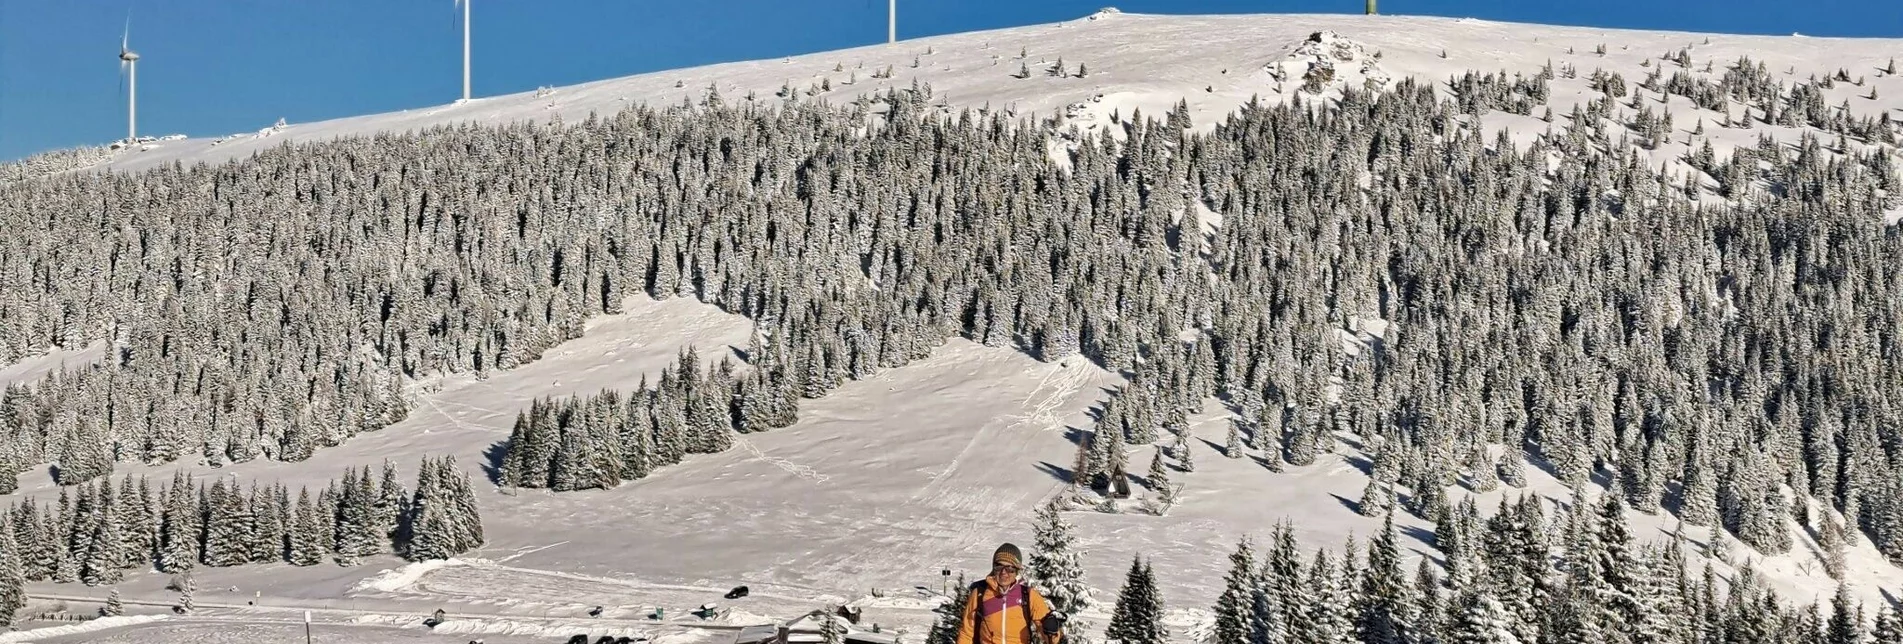 Schneeschuh Schneeschuhwanderung Moschkogel - Touren-Impression #1 | © Weges OG